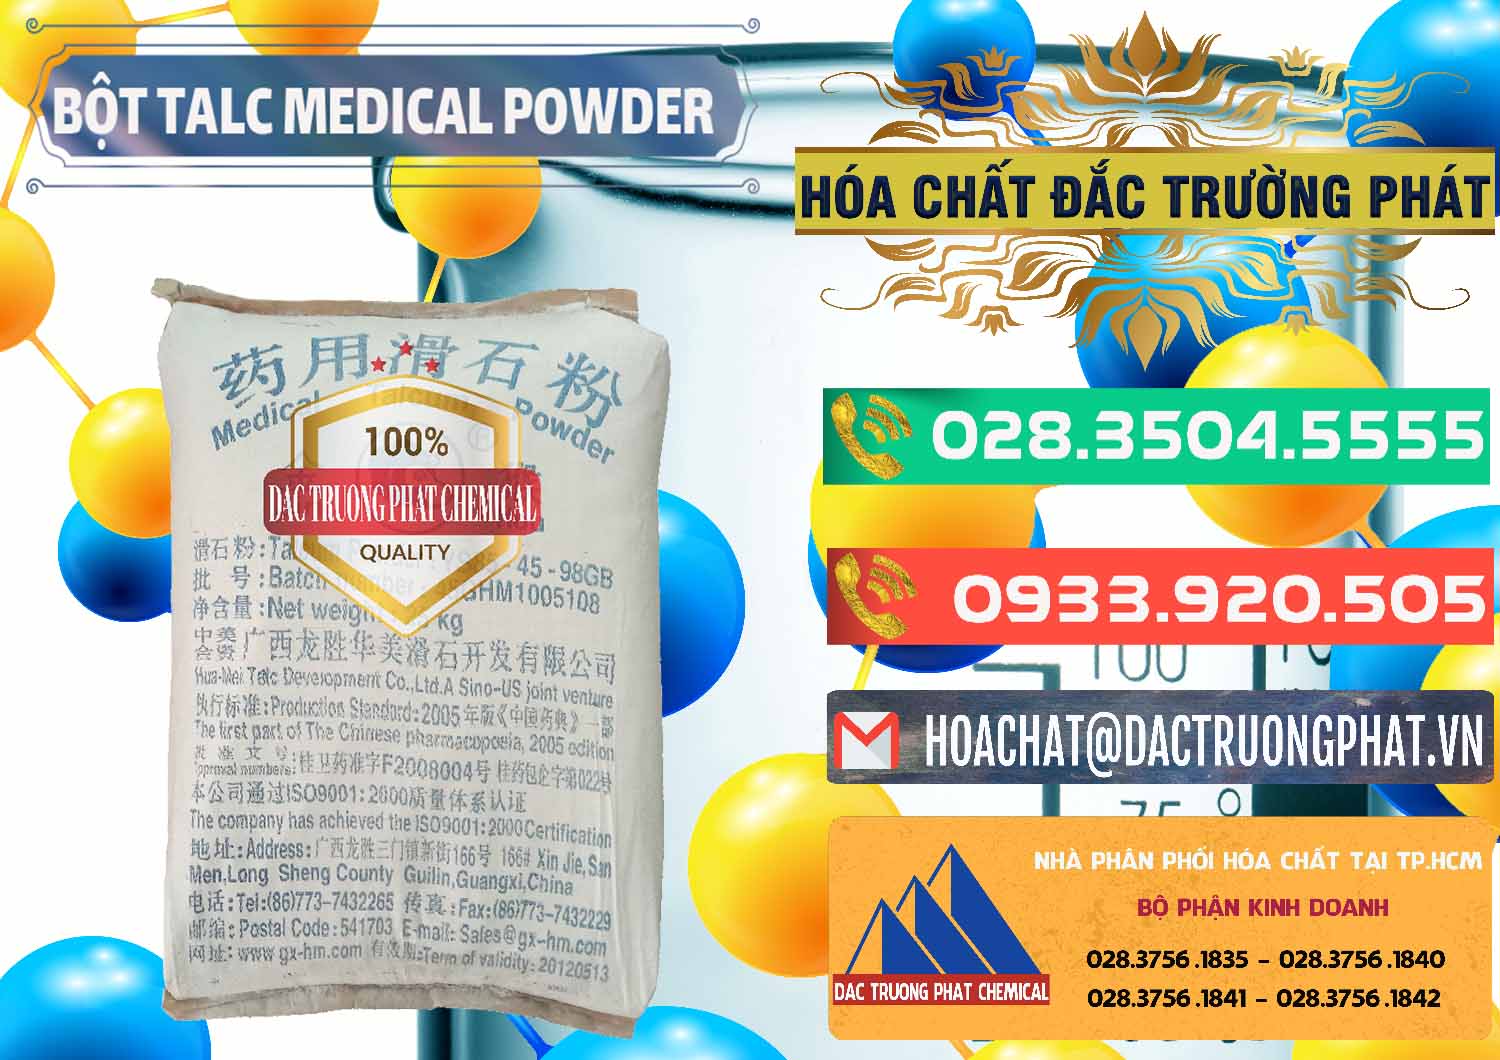 Nơi chuyên phân phối và bán Bột Talc Medical Powder Trung Quốc China - 0036 - Bán - cung cấp hóa chất tại TP.HCM - congtyhoachat.com.vn